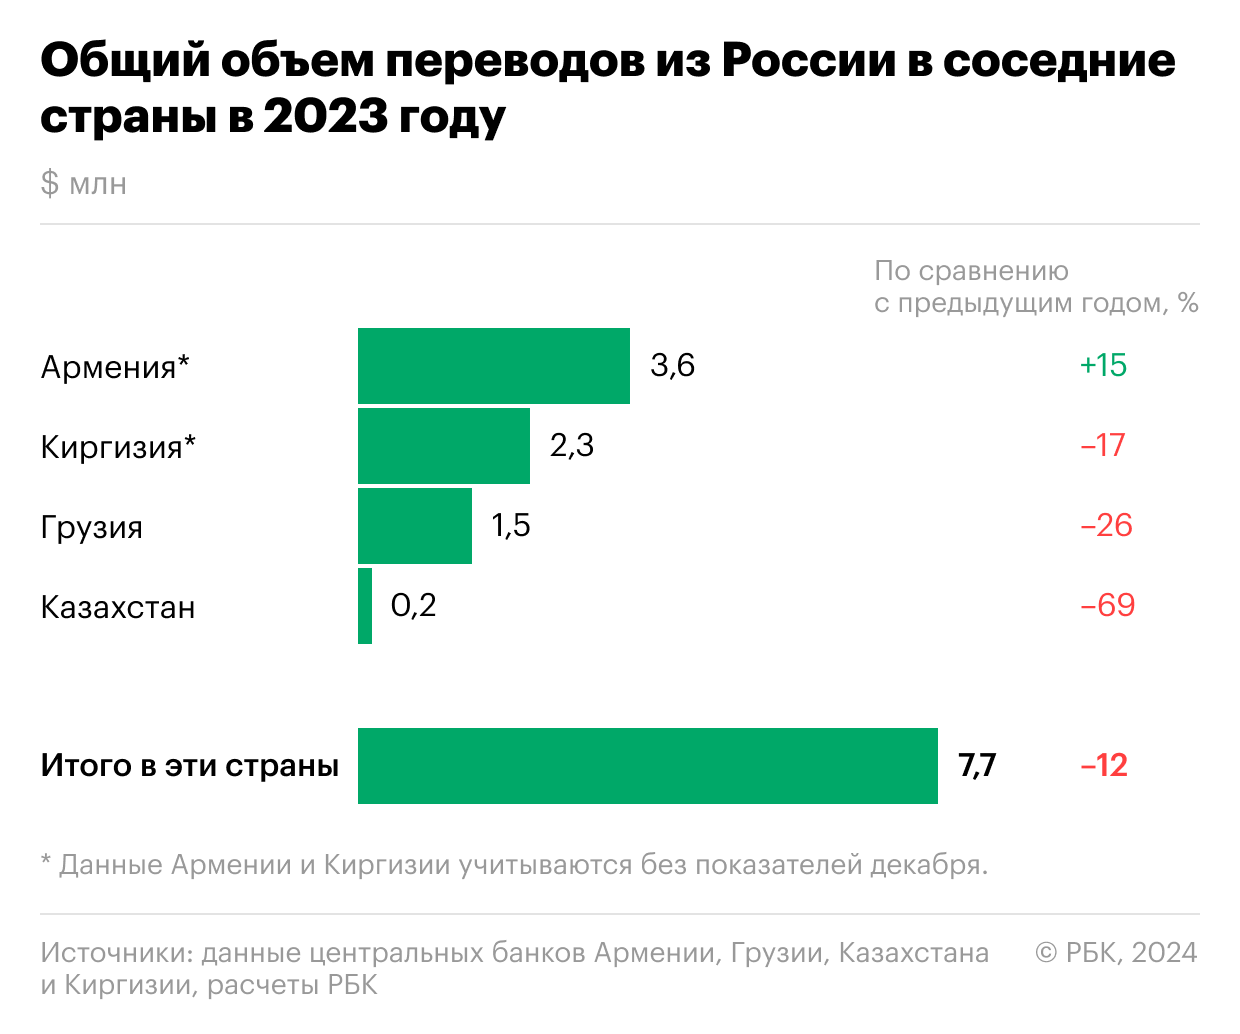 Как переводы из России в соседние страны резко упали. Инфографика